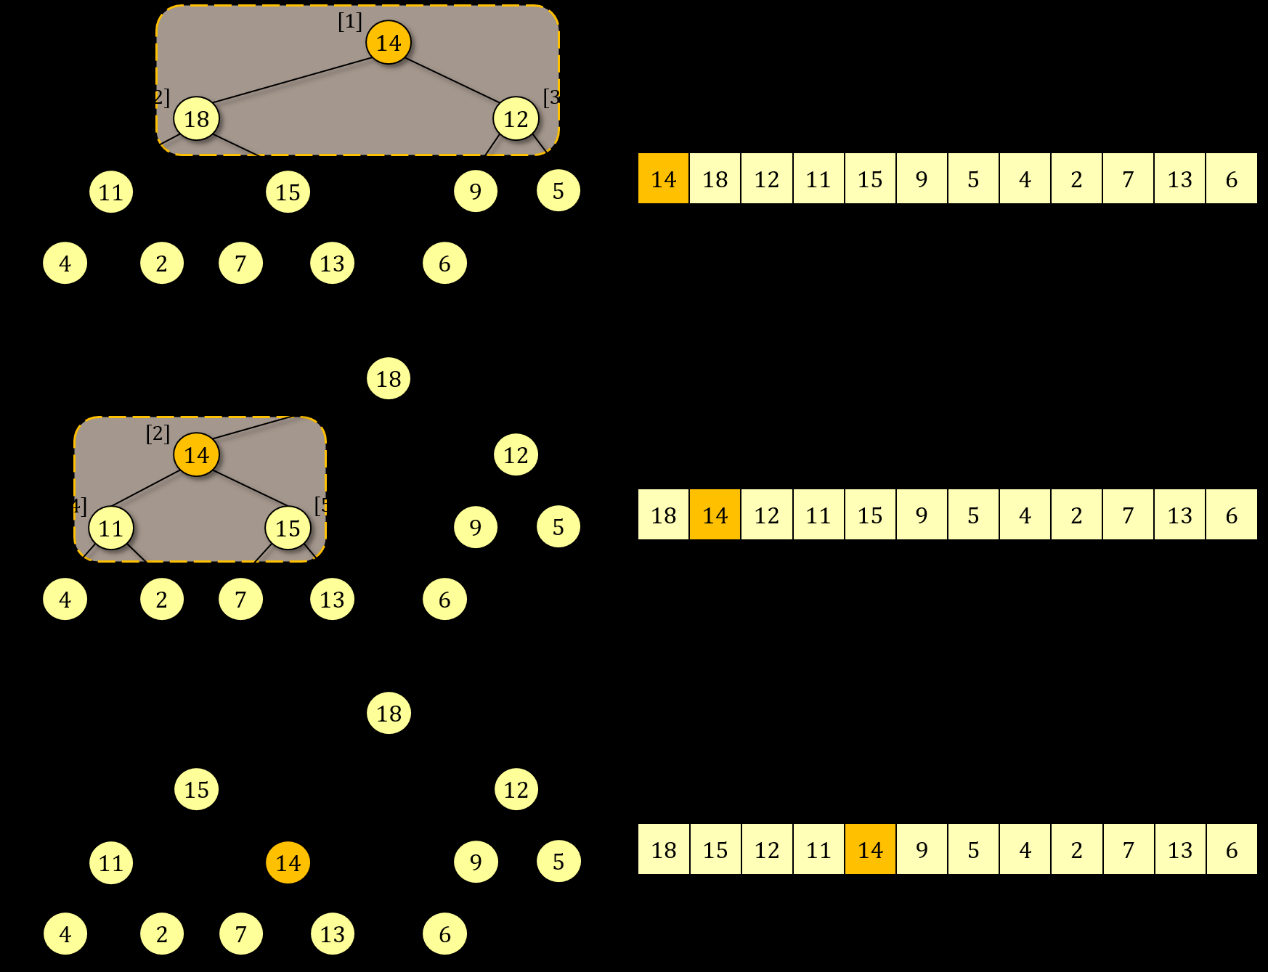 Εικόνα 6.4: Παράδειγμα εκτέλεσης της διαδικασίας αποκατάσταση κάτω(1) στο δυαδικό σωρό μέγιστου της Εικόνας 6.2, μετά την αλλαγή του κλειδιού στη θέση 1.